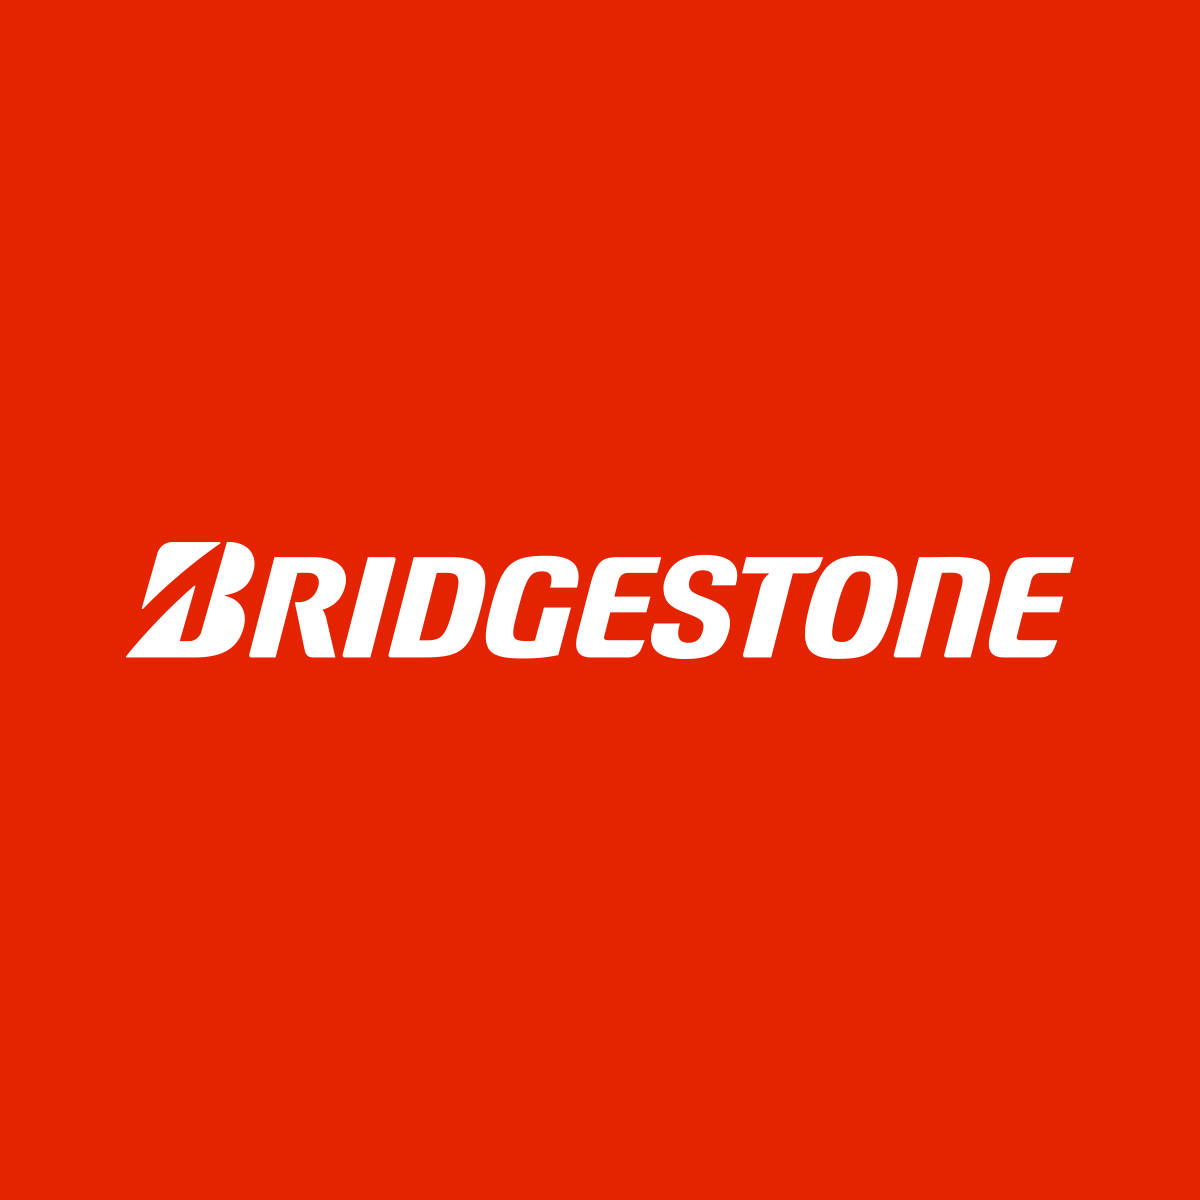 Bridgestone 1200 X 1200 Wallpaper